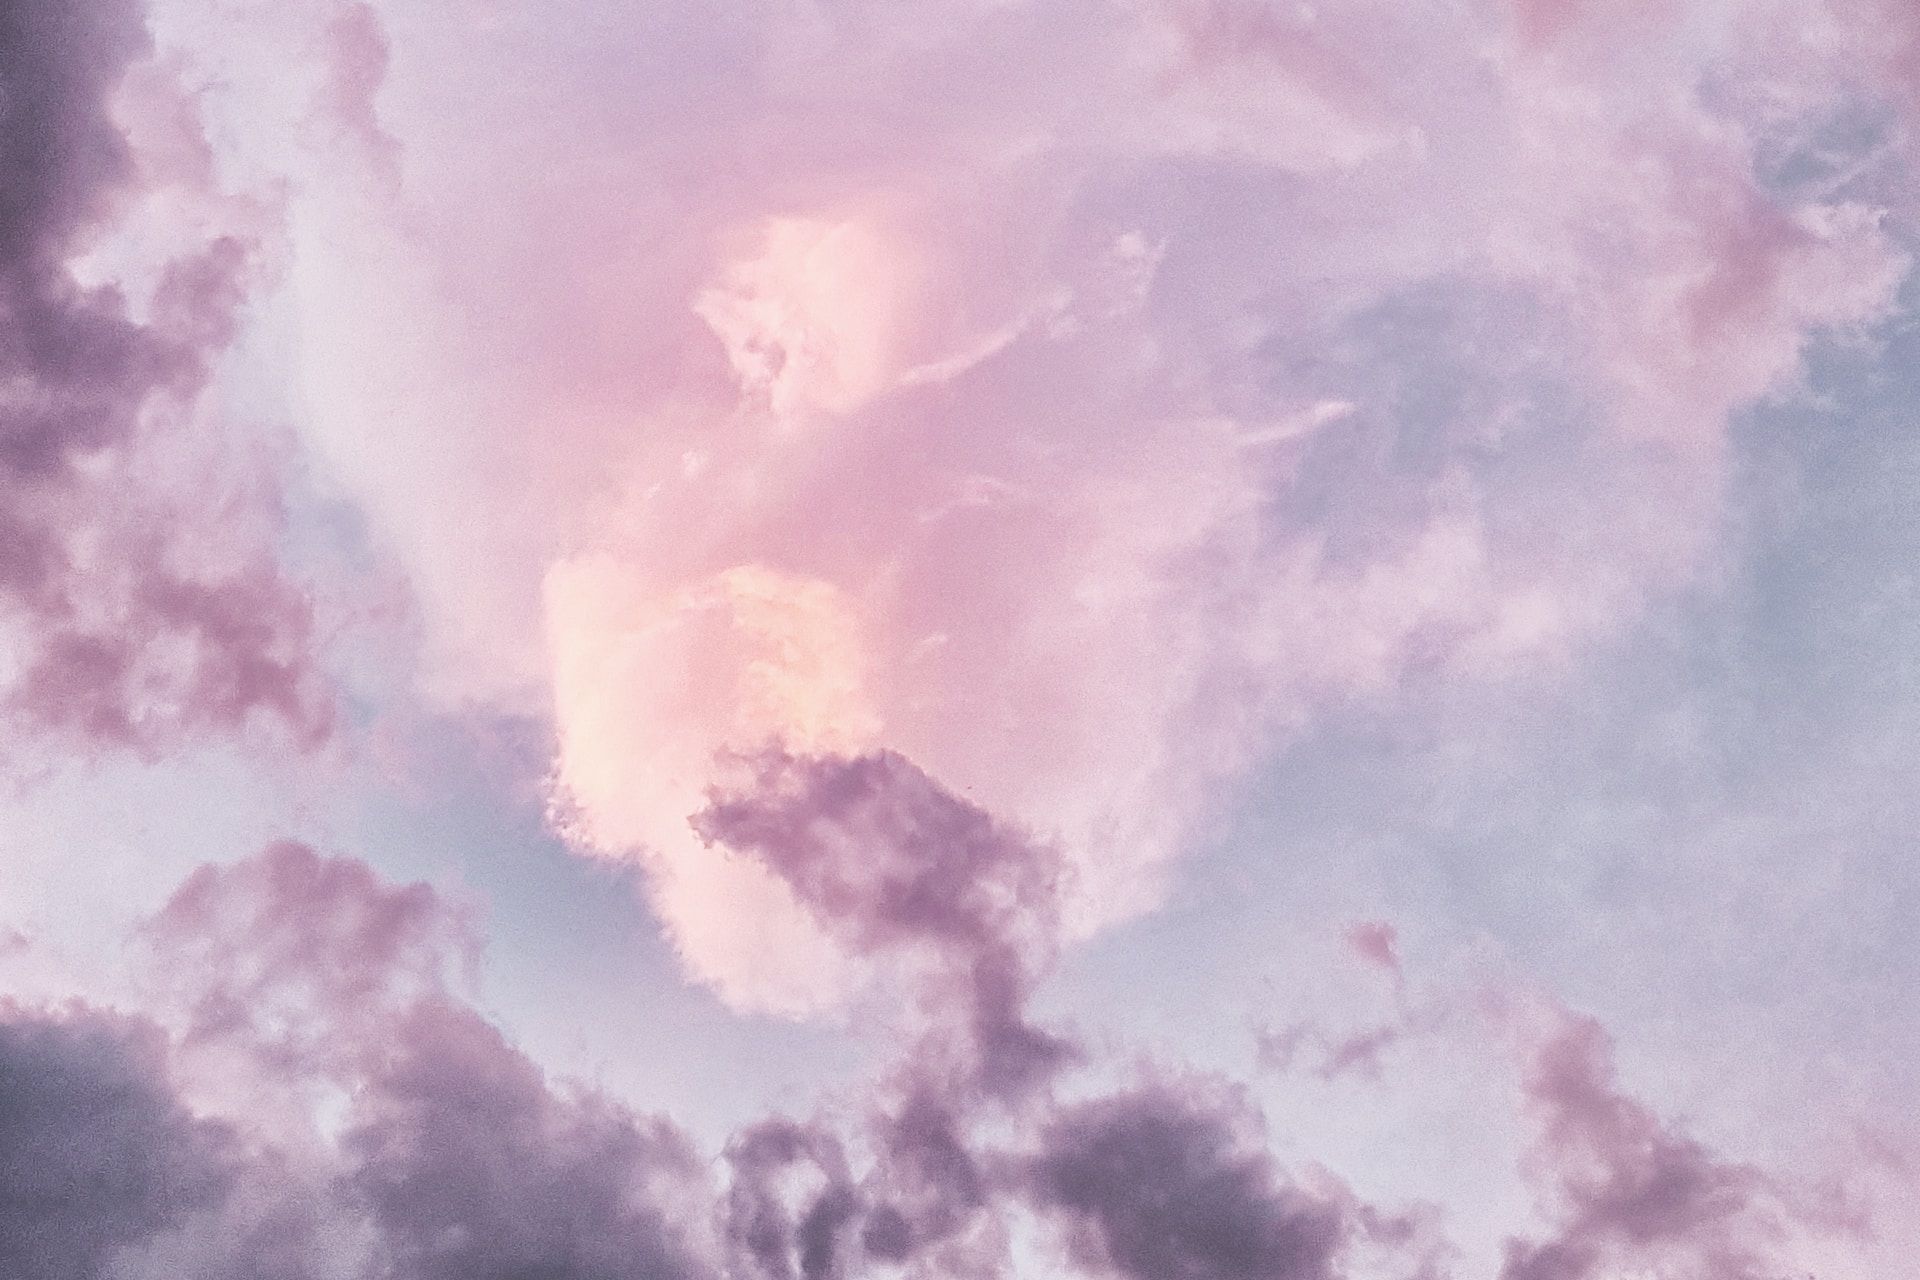 Ciel avec des nuages roses et blancs - Photo de eberhard ð grossgasteiger sur https://unsplash.com/fr/photos/NvesrDbsrL4